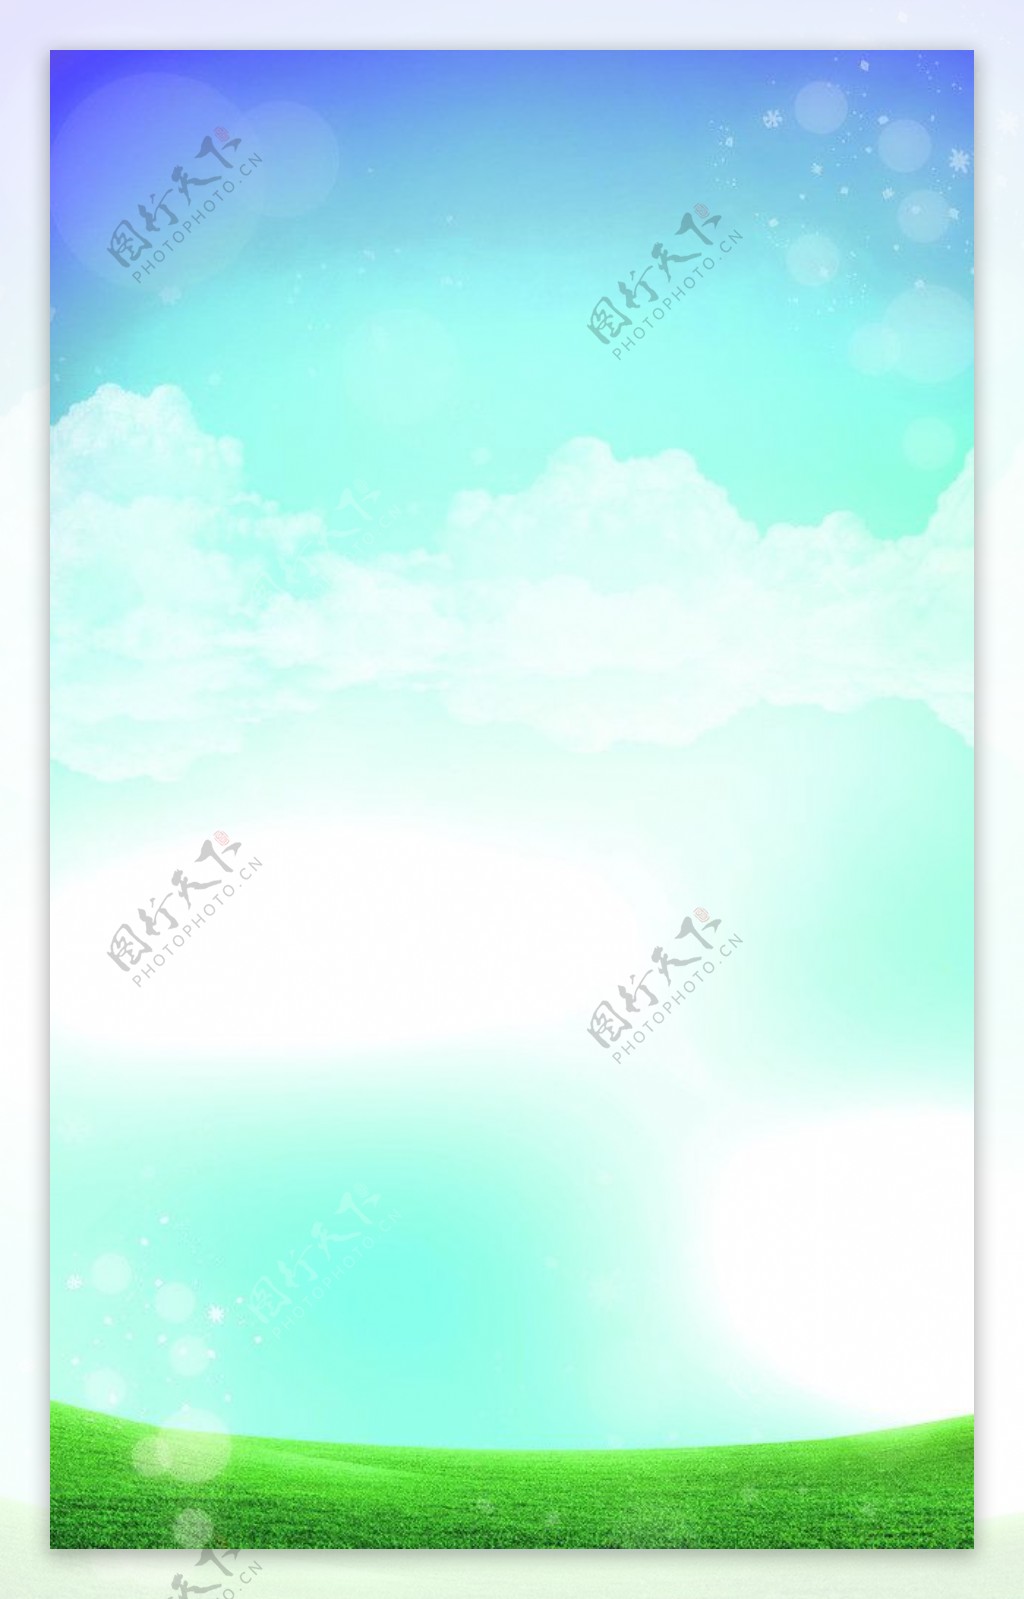 蓝天白云图片